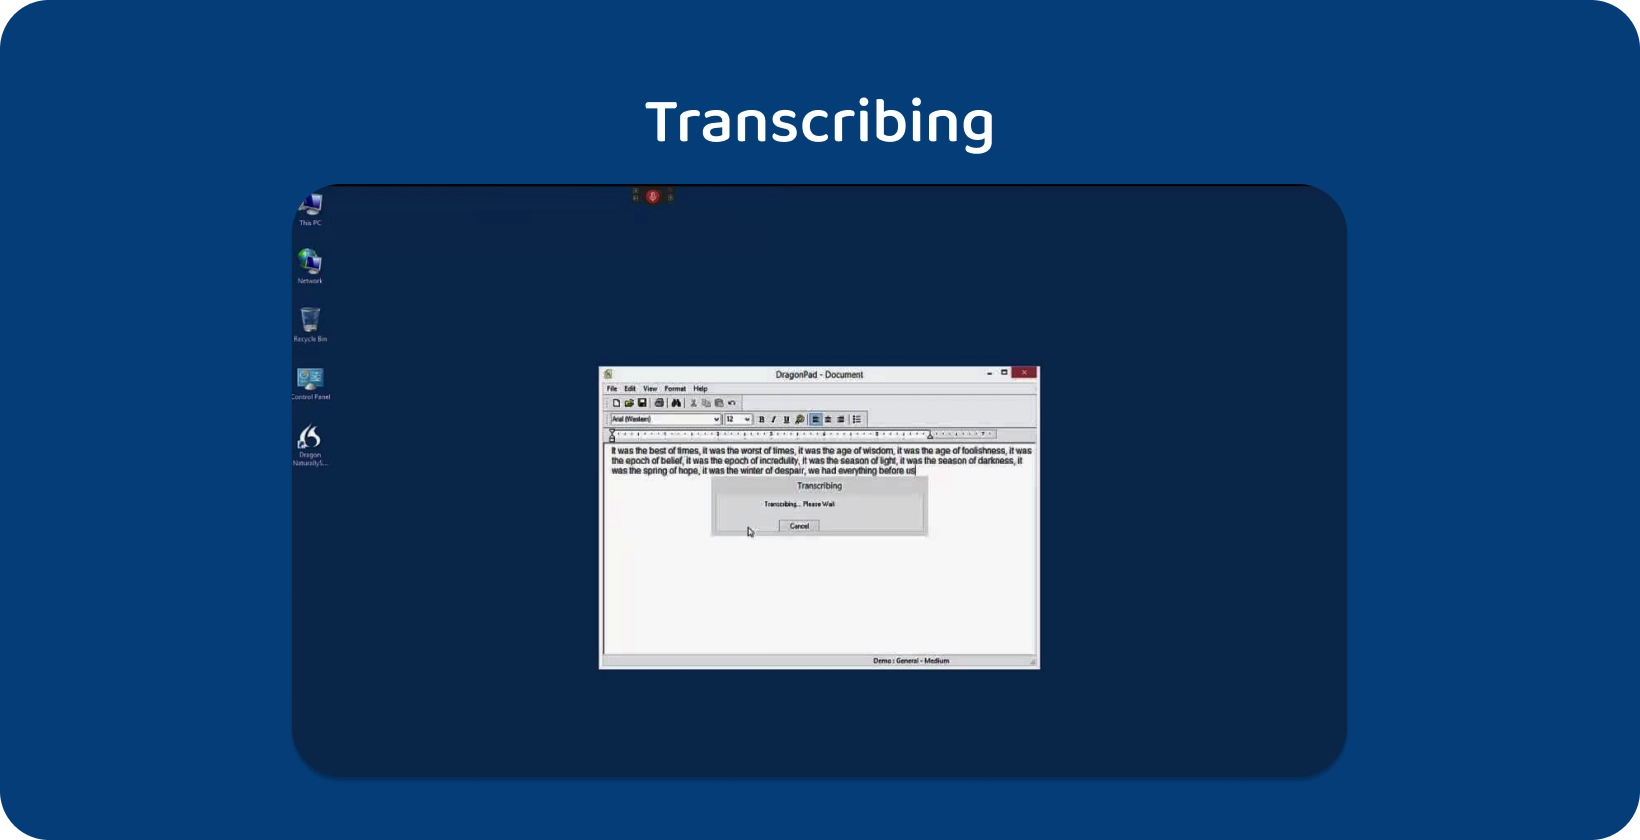 Edytor tekstu Dragon NaturallySpeaking aktywnie transkrybujący trwający wywiad wyświetlany na ekranie komputera.